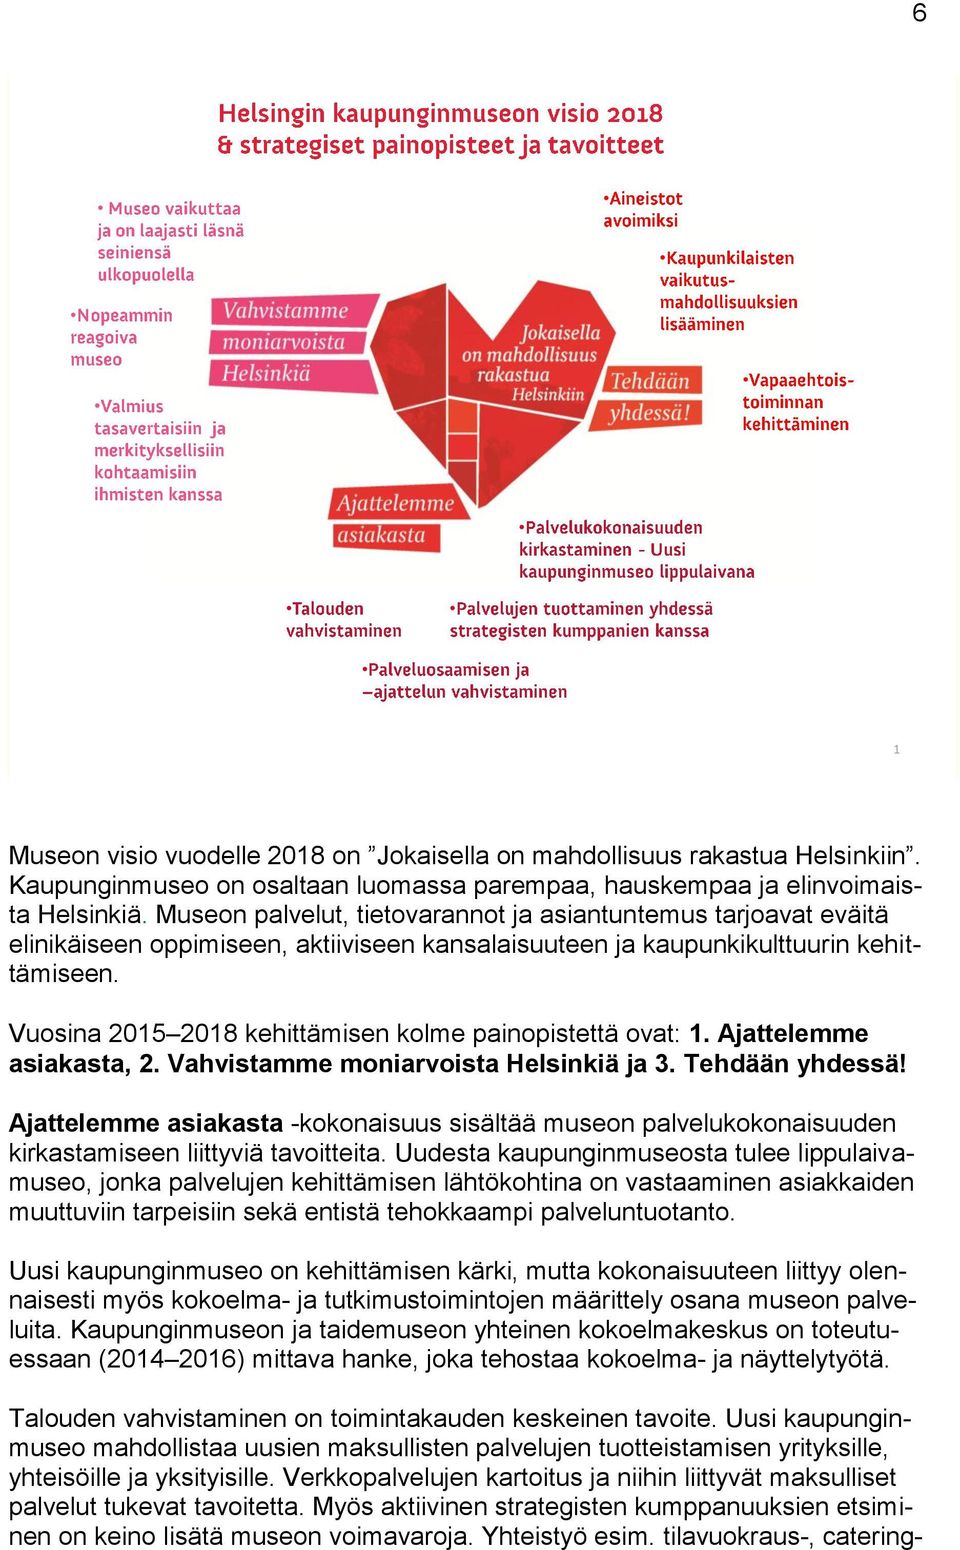 Vuosina 2015 2018 kehittämisen kolme painopistettä ovat: 1. Ajattelemme asiakasta, 2. Vahvistamme moniarvoista Helsinkiä ja 3. Tehdään yhdessä!